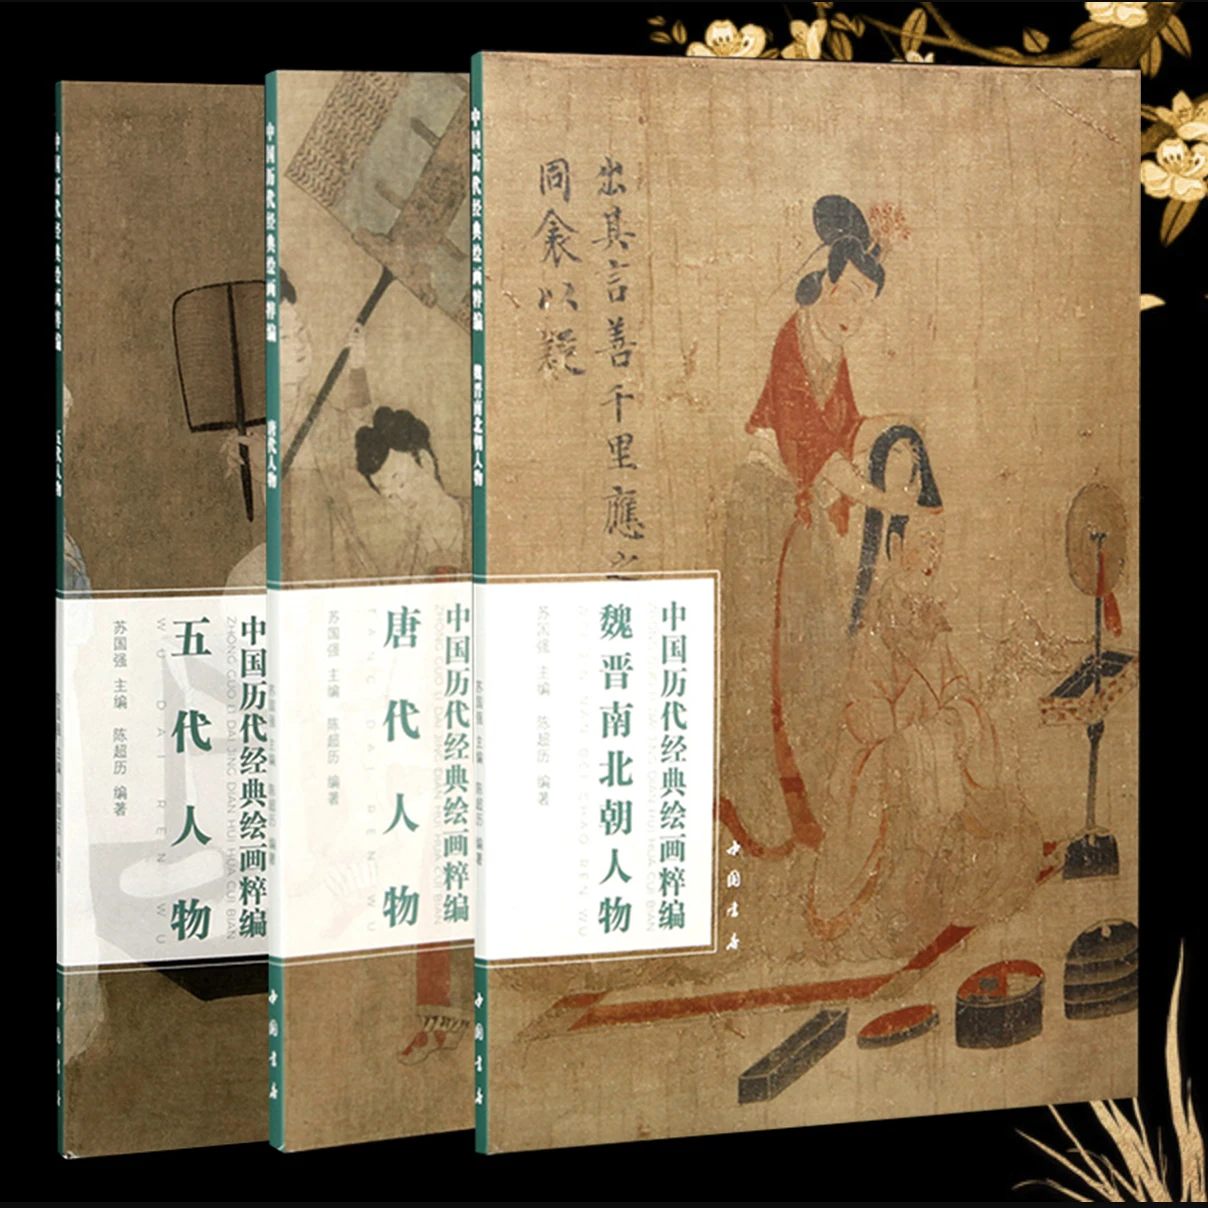 Фигурки-из-Вэй-в-Северную-Чао-Тан-Дай-пять-династий-Коллекция-классических-китайских-картин-арт-книга